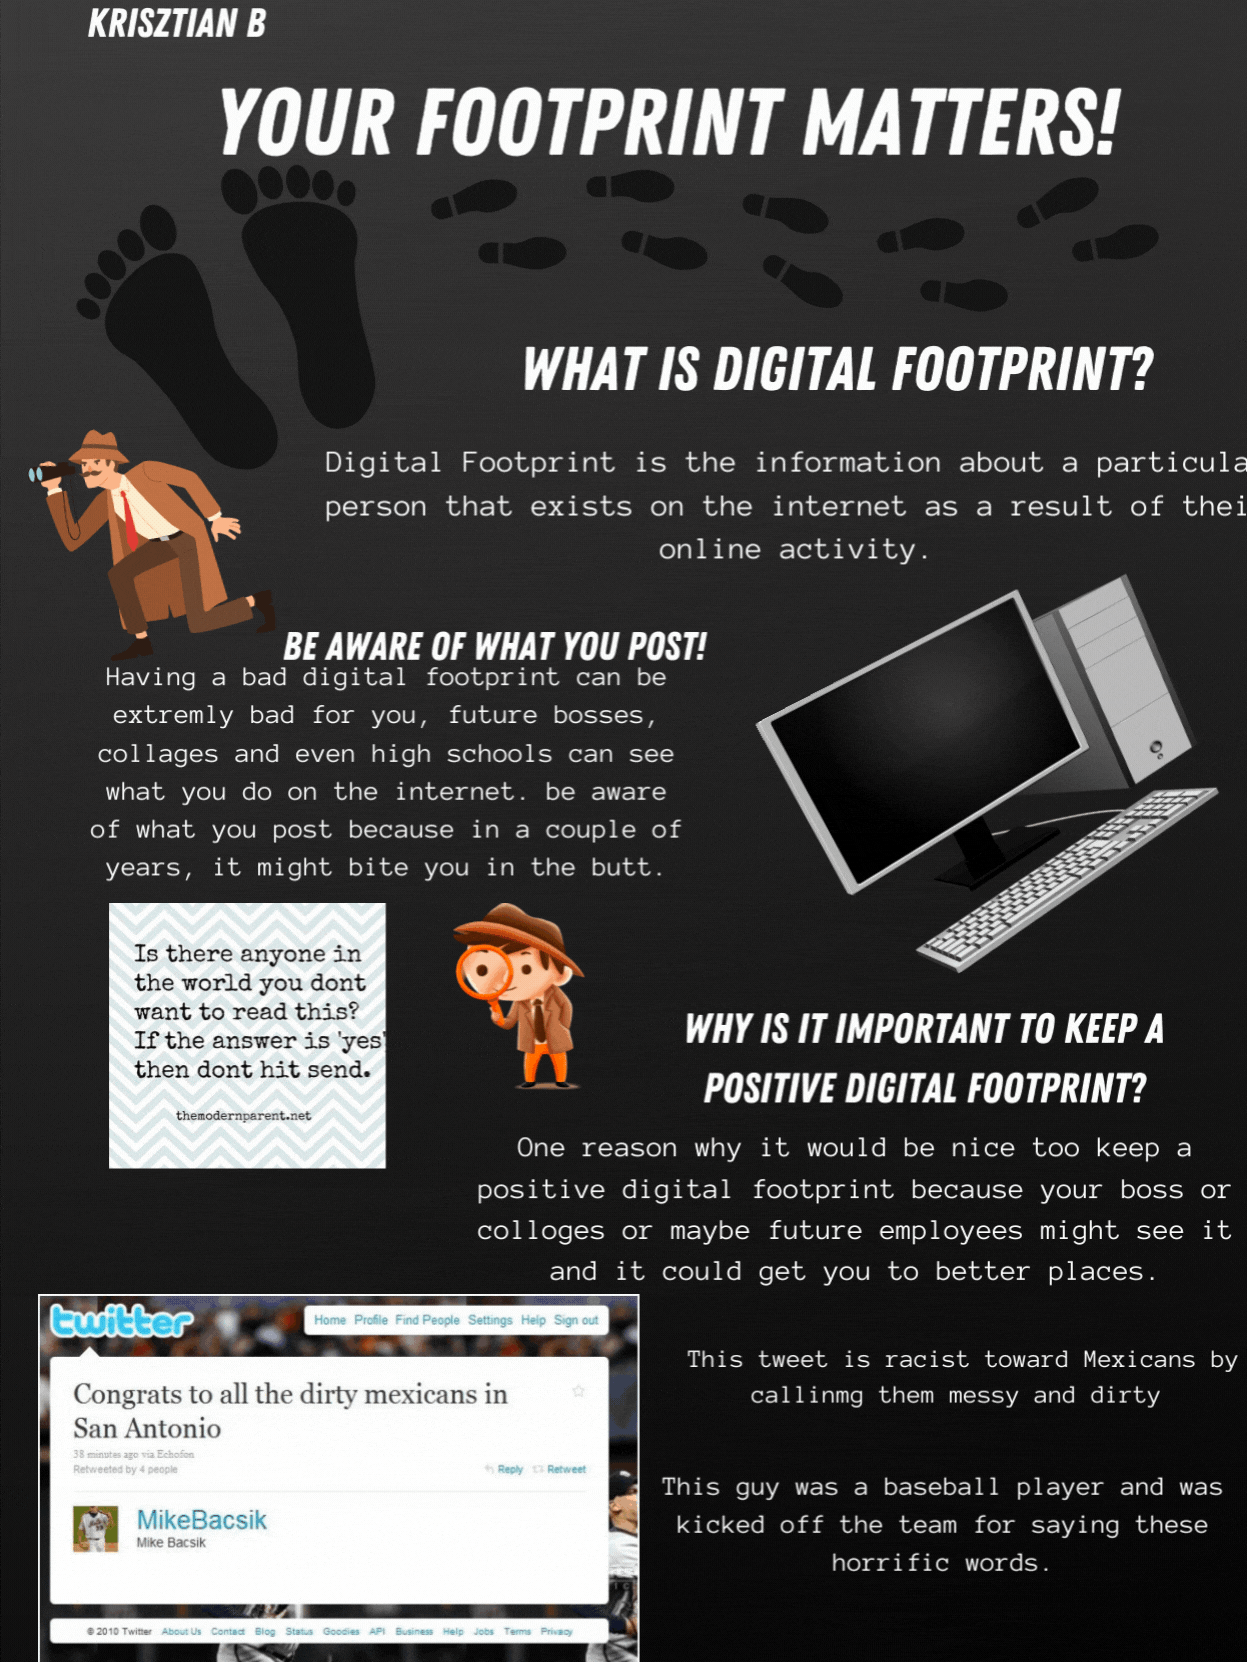 Digital Footprint Poster - Krisztian B